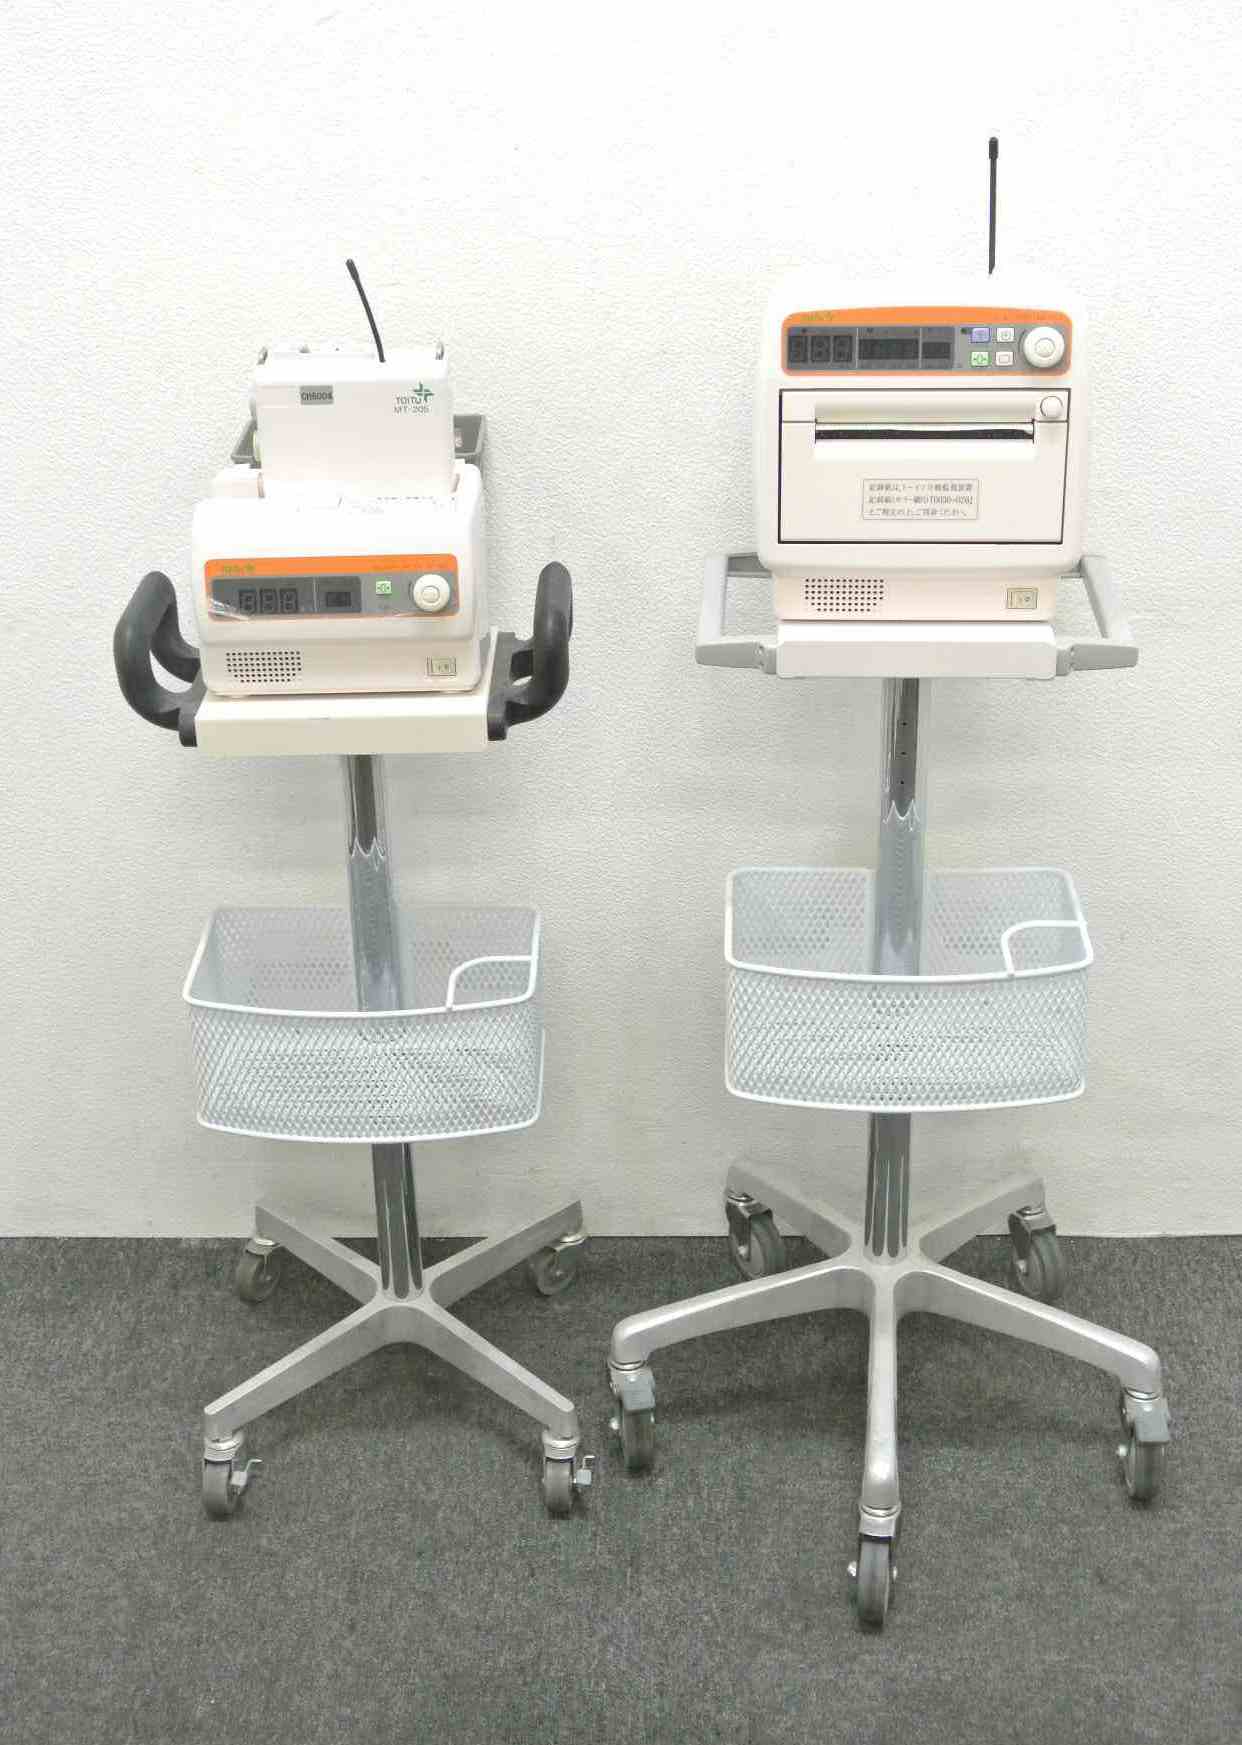 産婦人科機器|トーイツ|分娩監視装置|MT-517|中古医療機器 エム・キャスト|